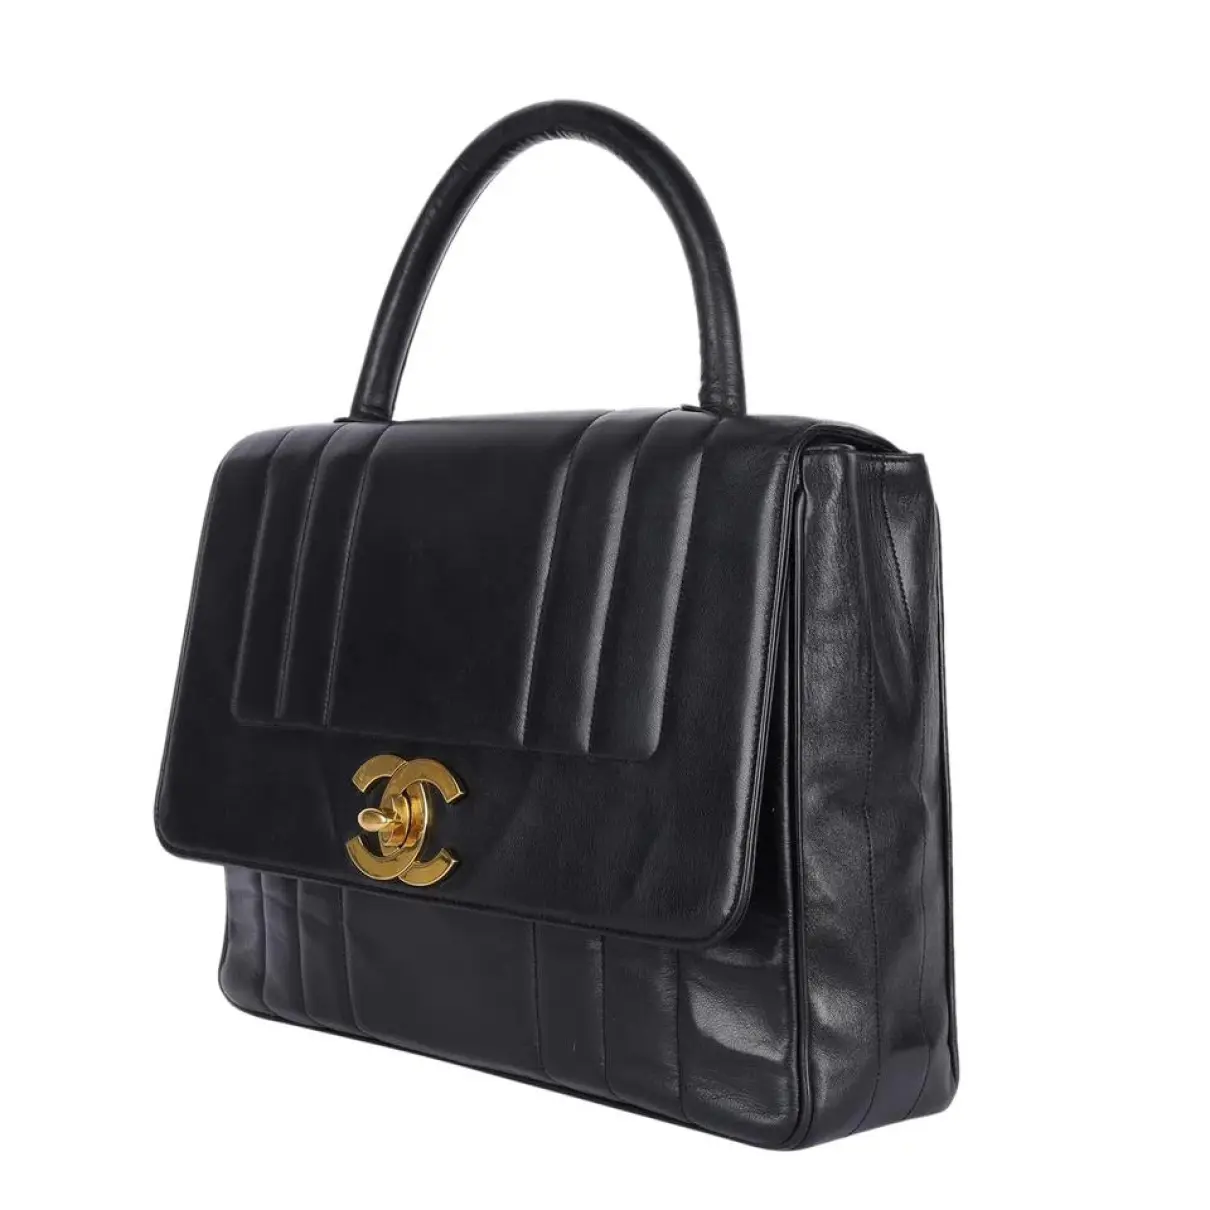 Timeless/Classique leather satchel Chanel - Vintage